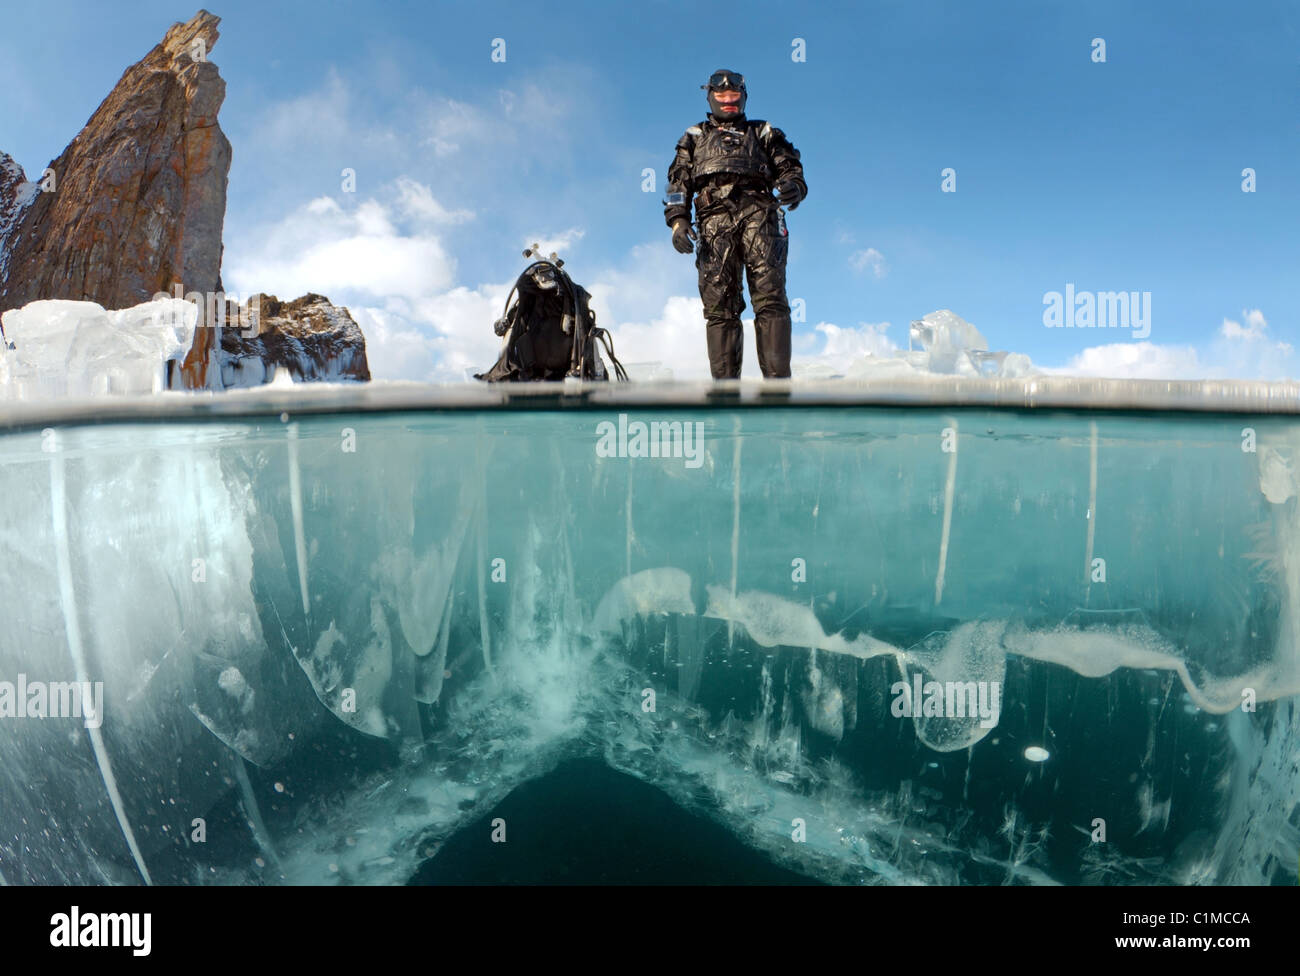 Subacquea a livello diviso, femmina sub preparando per ice-immersioni nel lago Baikal, Siberia, Russia, isola di Olkhon. Foto Stock